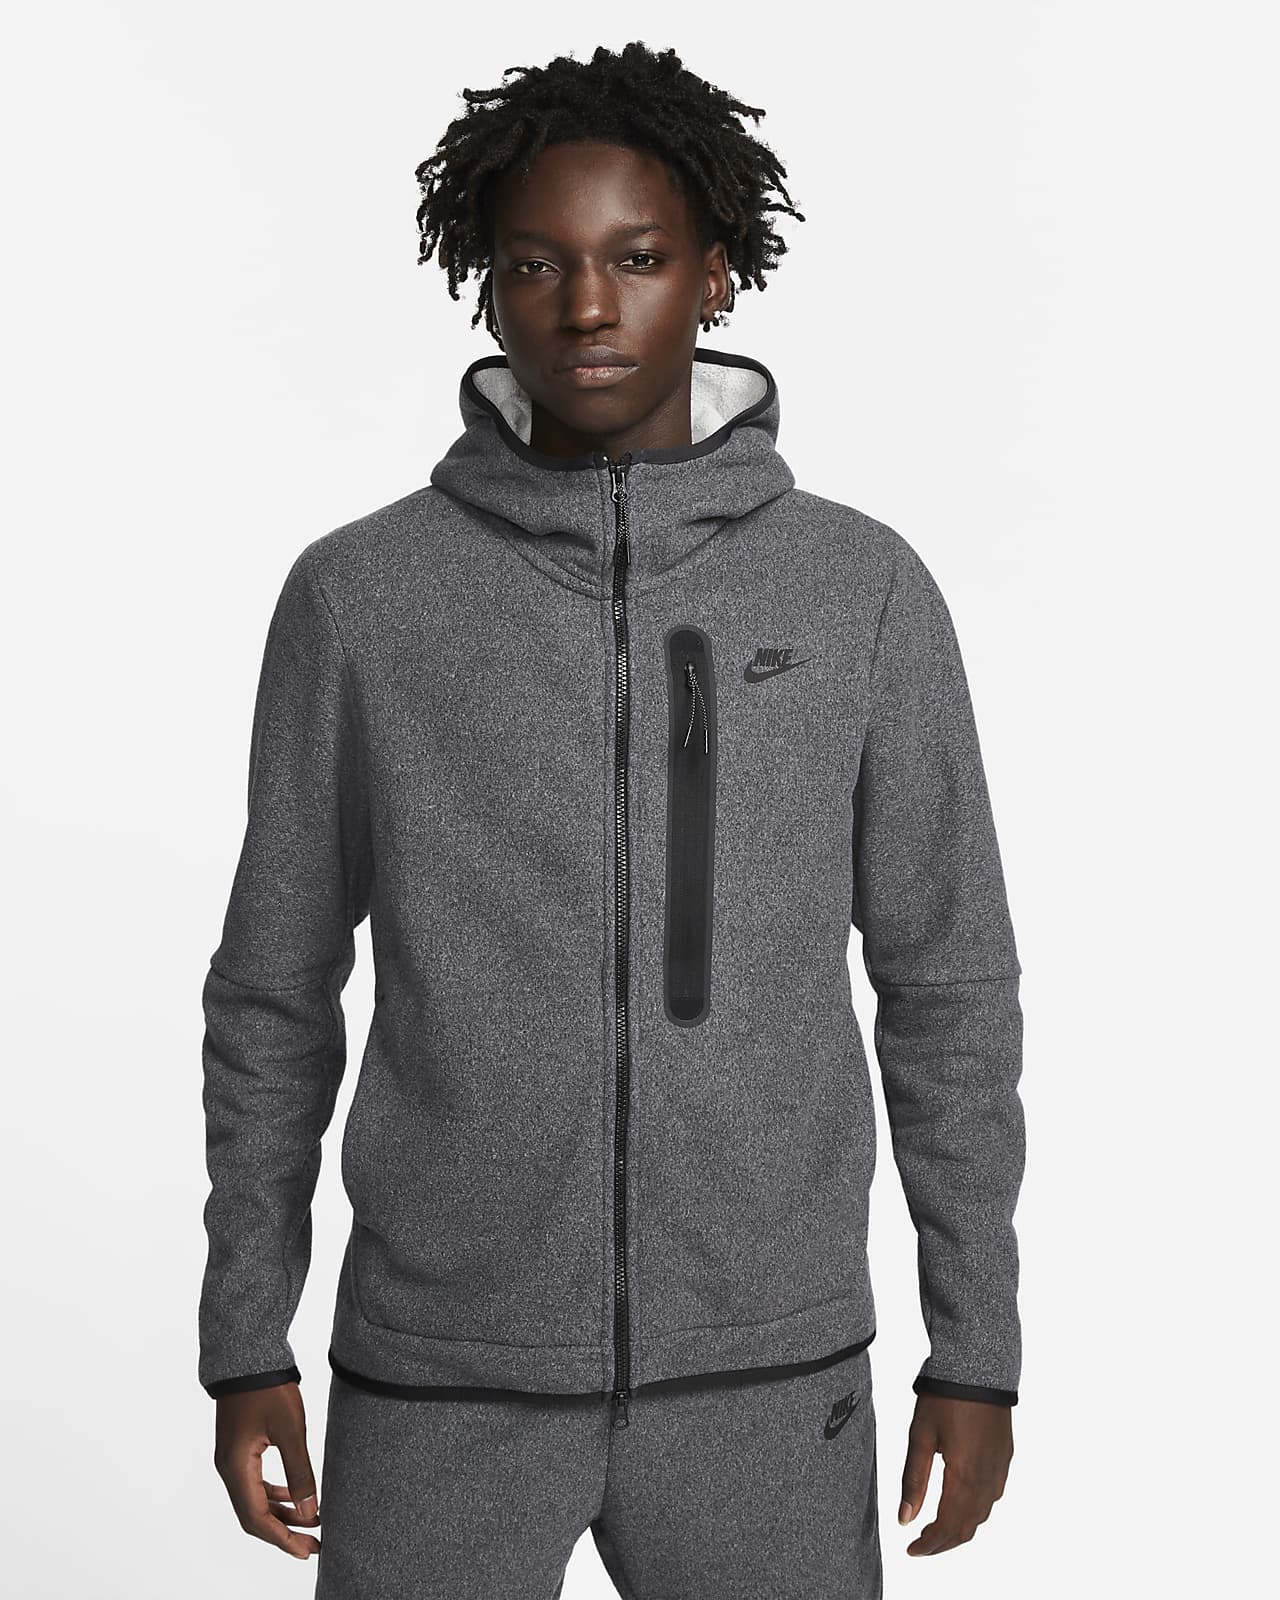 Pánská zimní mikina Nike Sportswear Tech s kapucí zipem po celé délce. Nike CZ